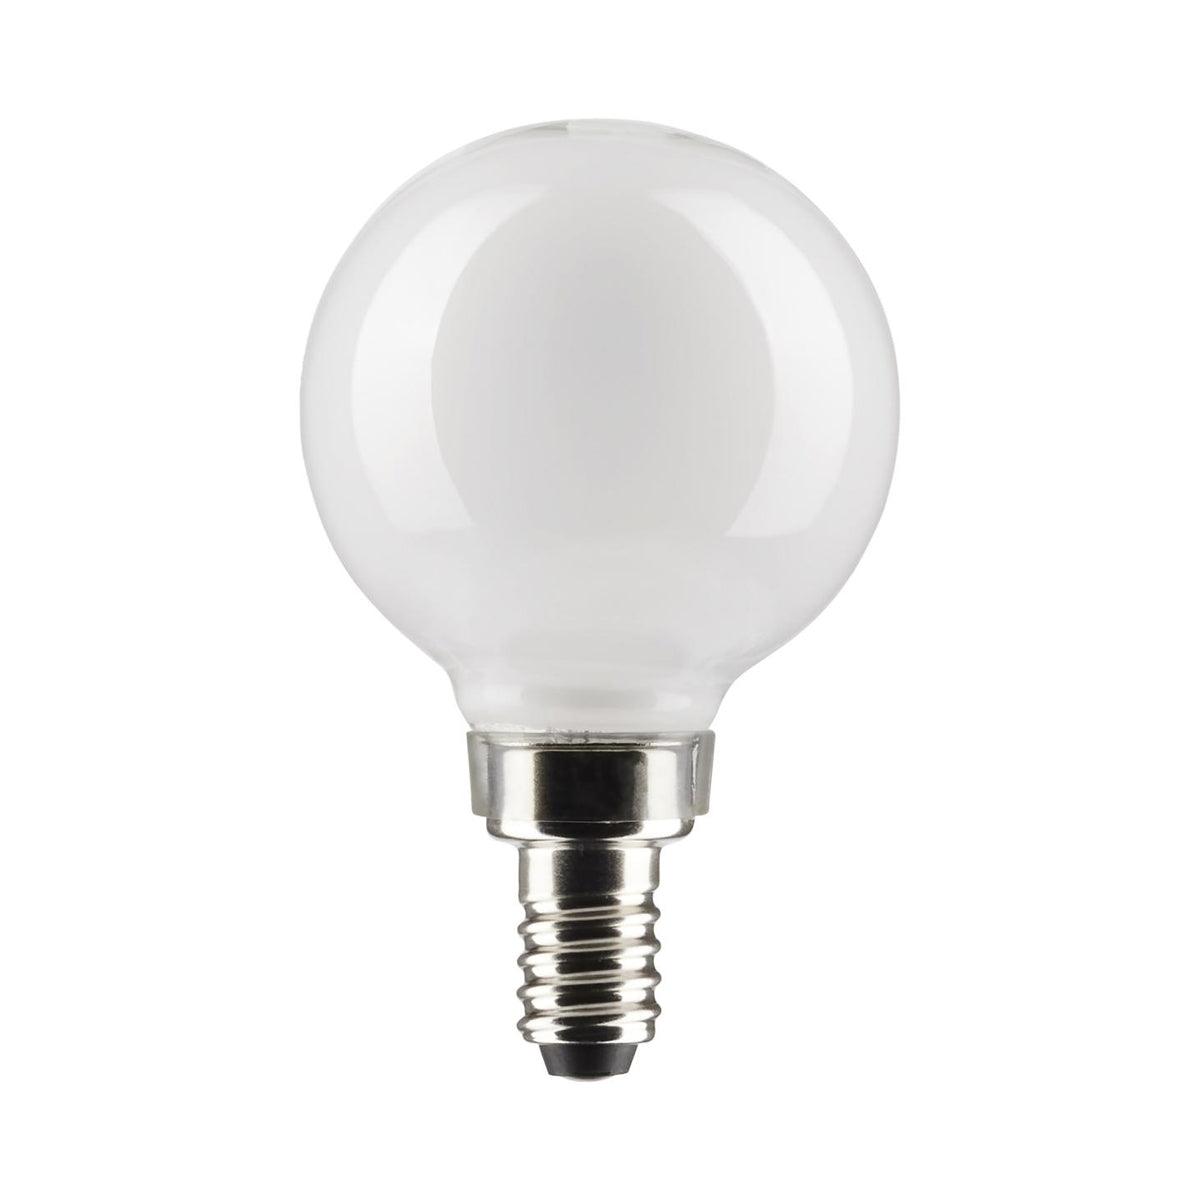 G16.5 LED Globe Bulb, 5 Watt, 350 Lumens, 2700K, E12 Candelabra Base, Frosted Finish, Pack Of 2 - Bees Lighting